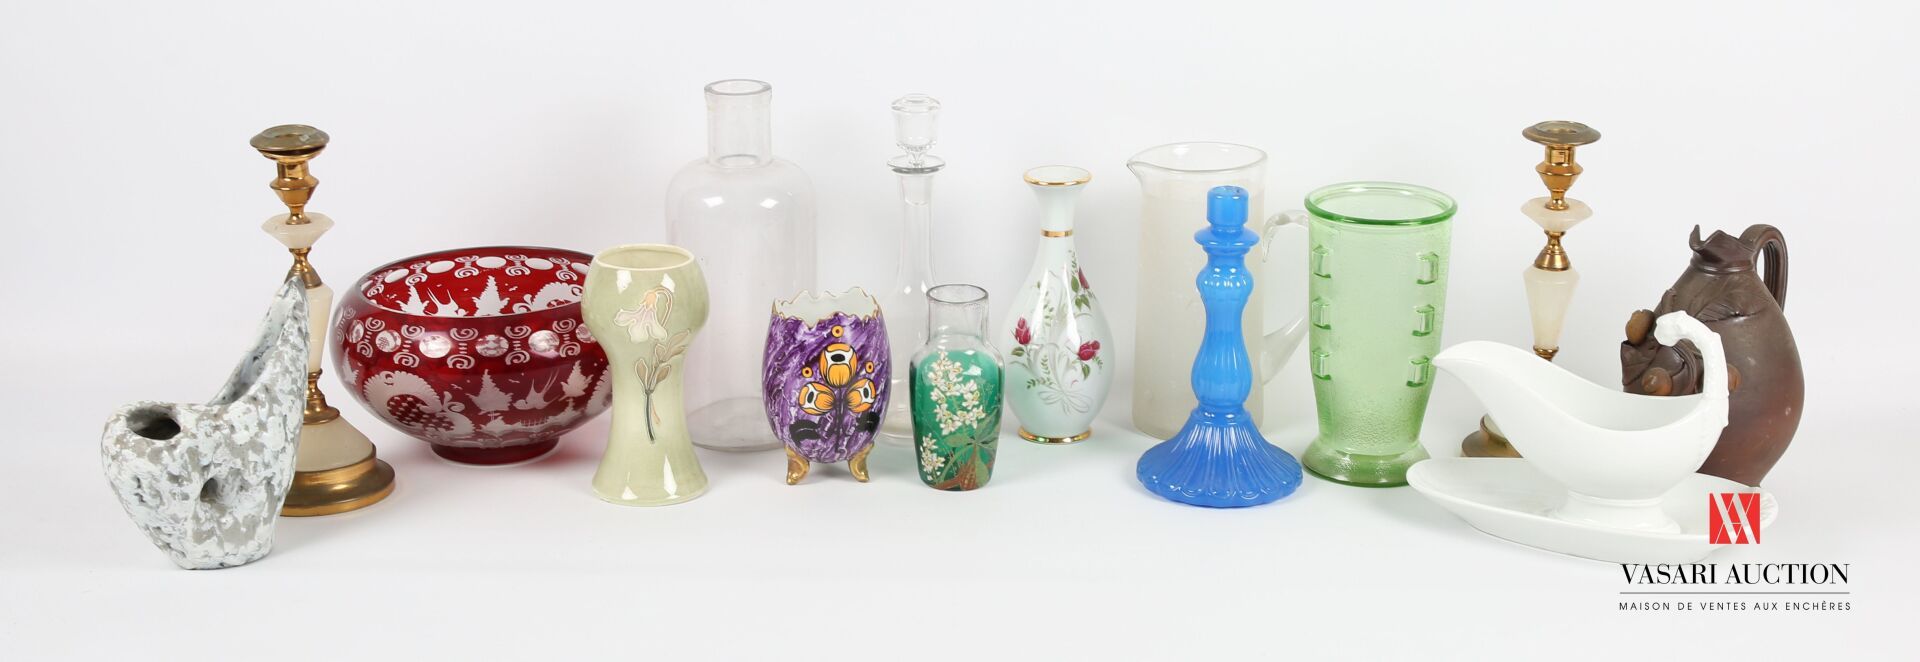 Null 拍品包括一个玻璃瓶（碎片），一个玻璃杯及其塞子，一个酱缸及其可移动的白瓷框架，一个在紫色大理石背景上装饰有风格化花朵的卵形花瓶，一个装饰有花朵和金丝的&hellip;